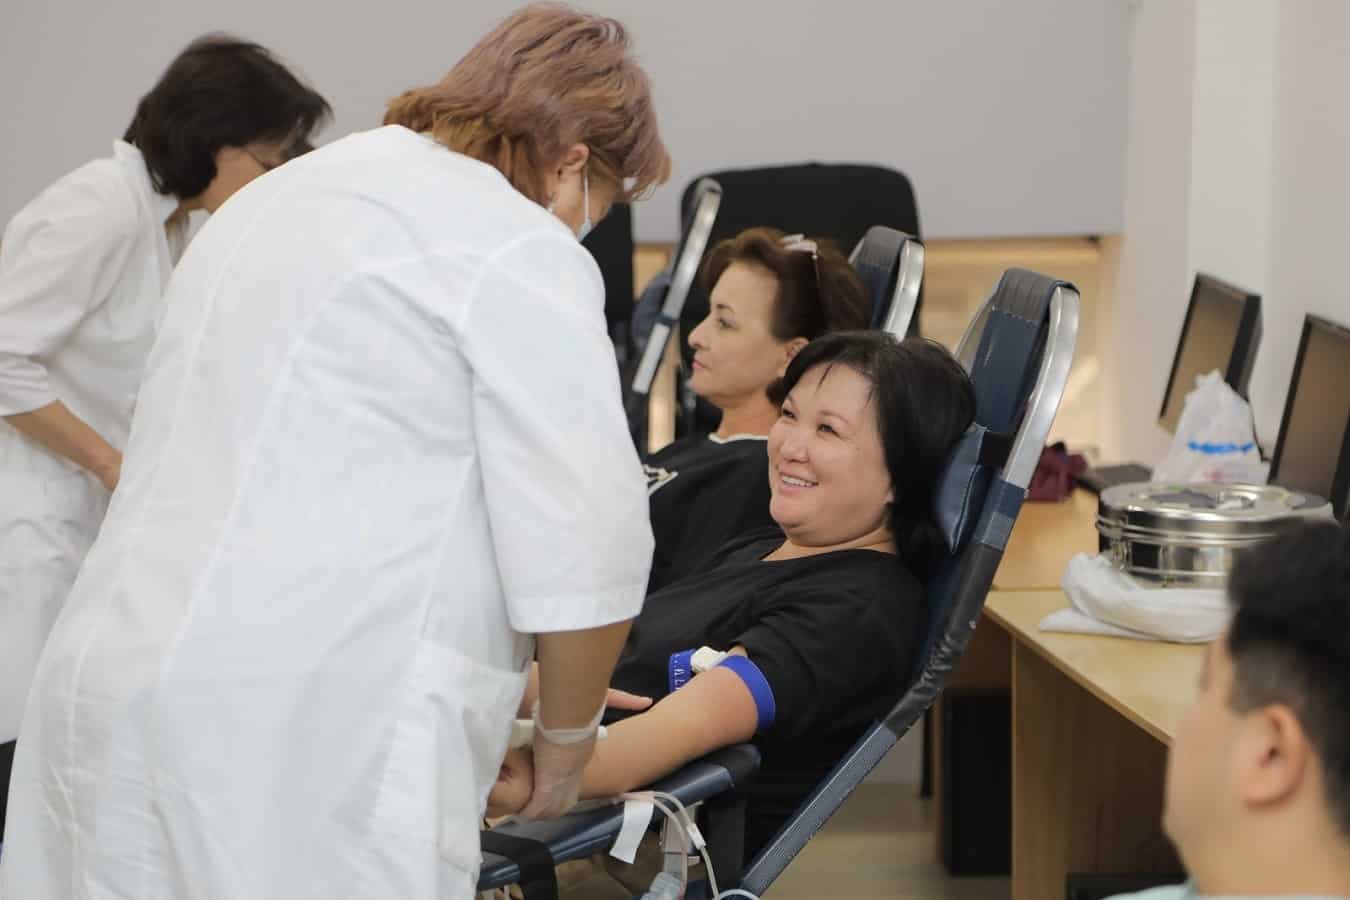 Творить добро просто! Сотрудники MegaCom сдали около 20 литров донорской крови